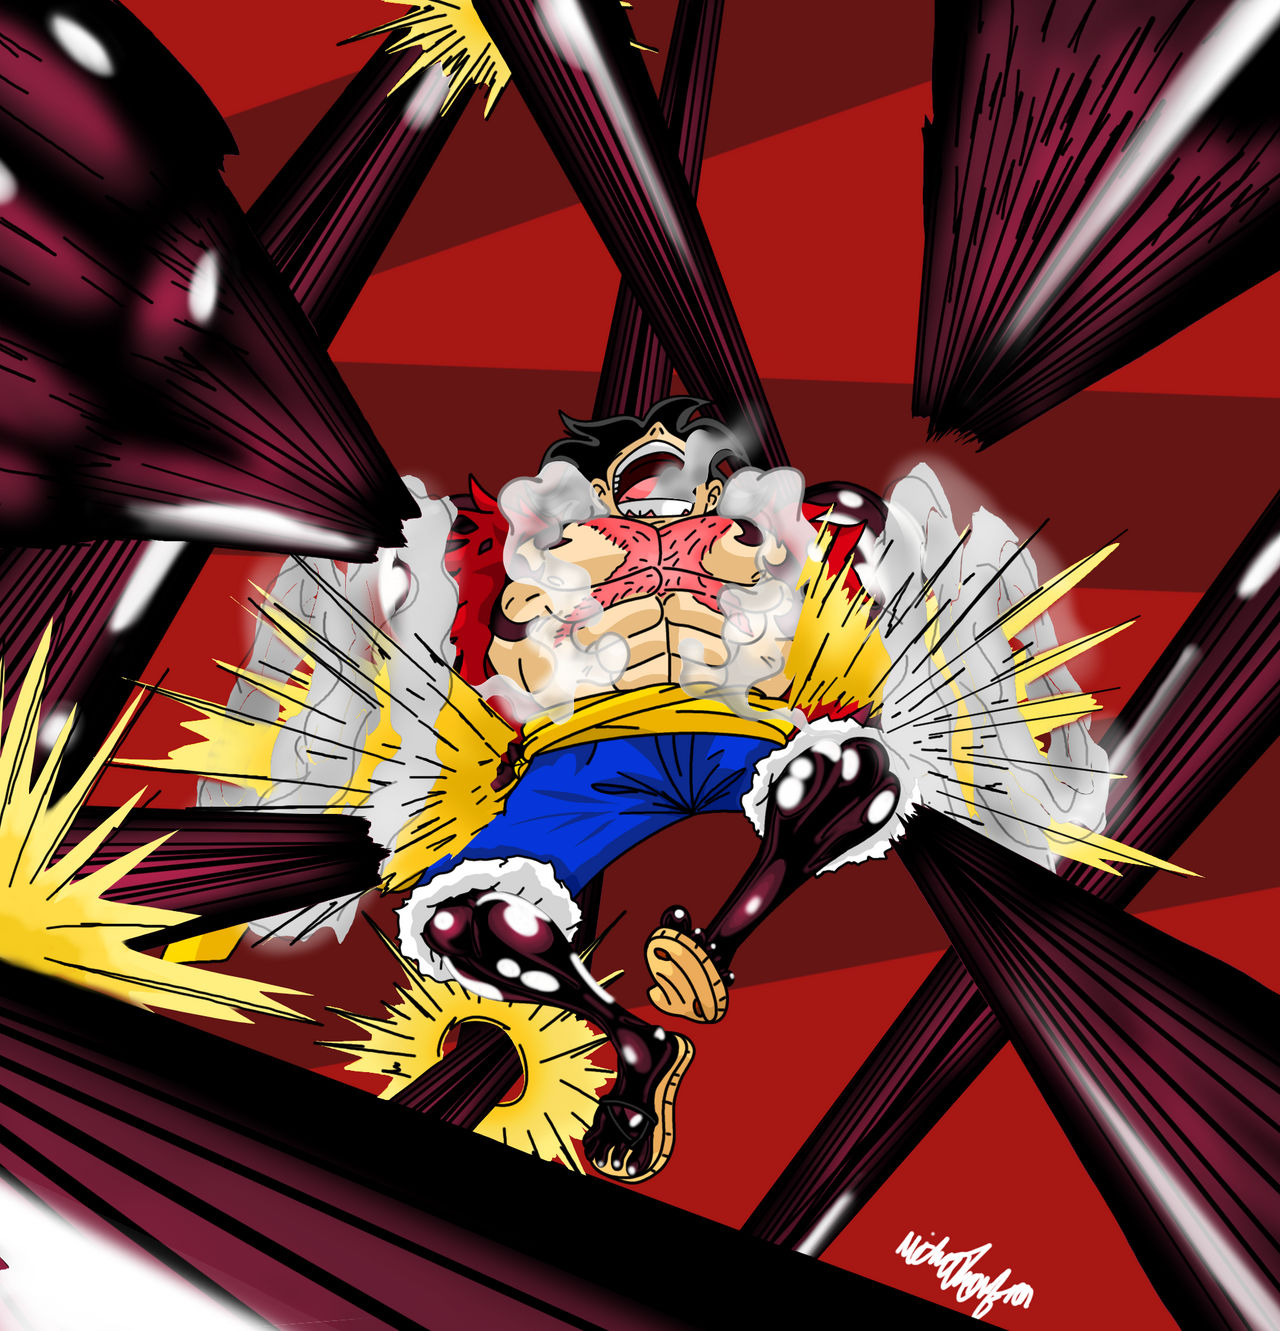 Luffy gear 4th gomu gomu no - Kong gun Kingsalaman - Illustrations